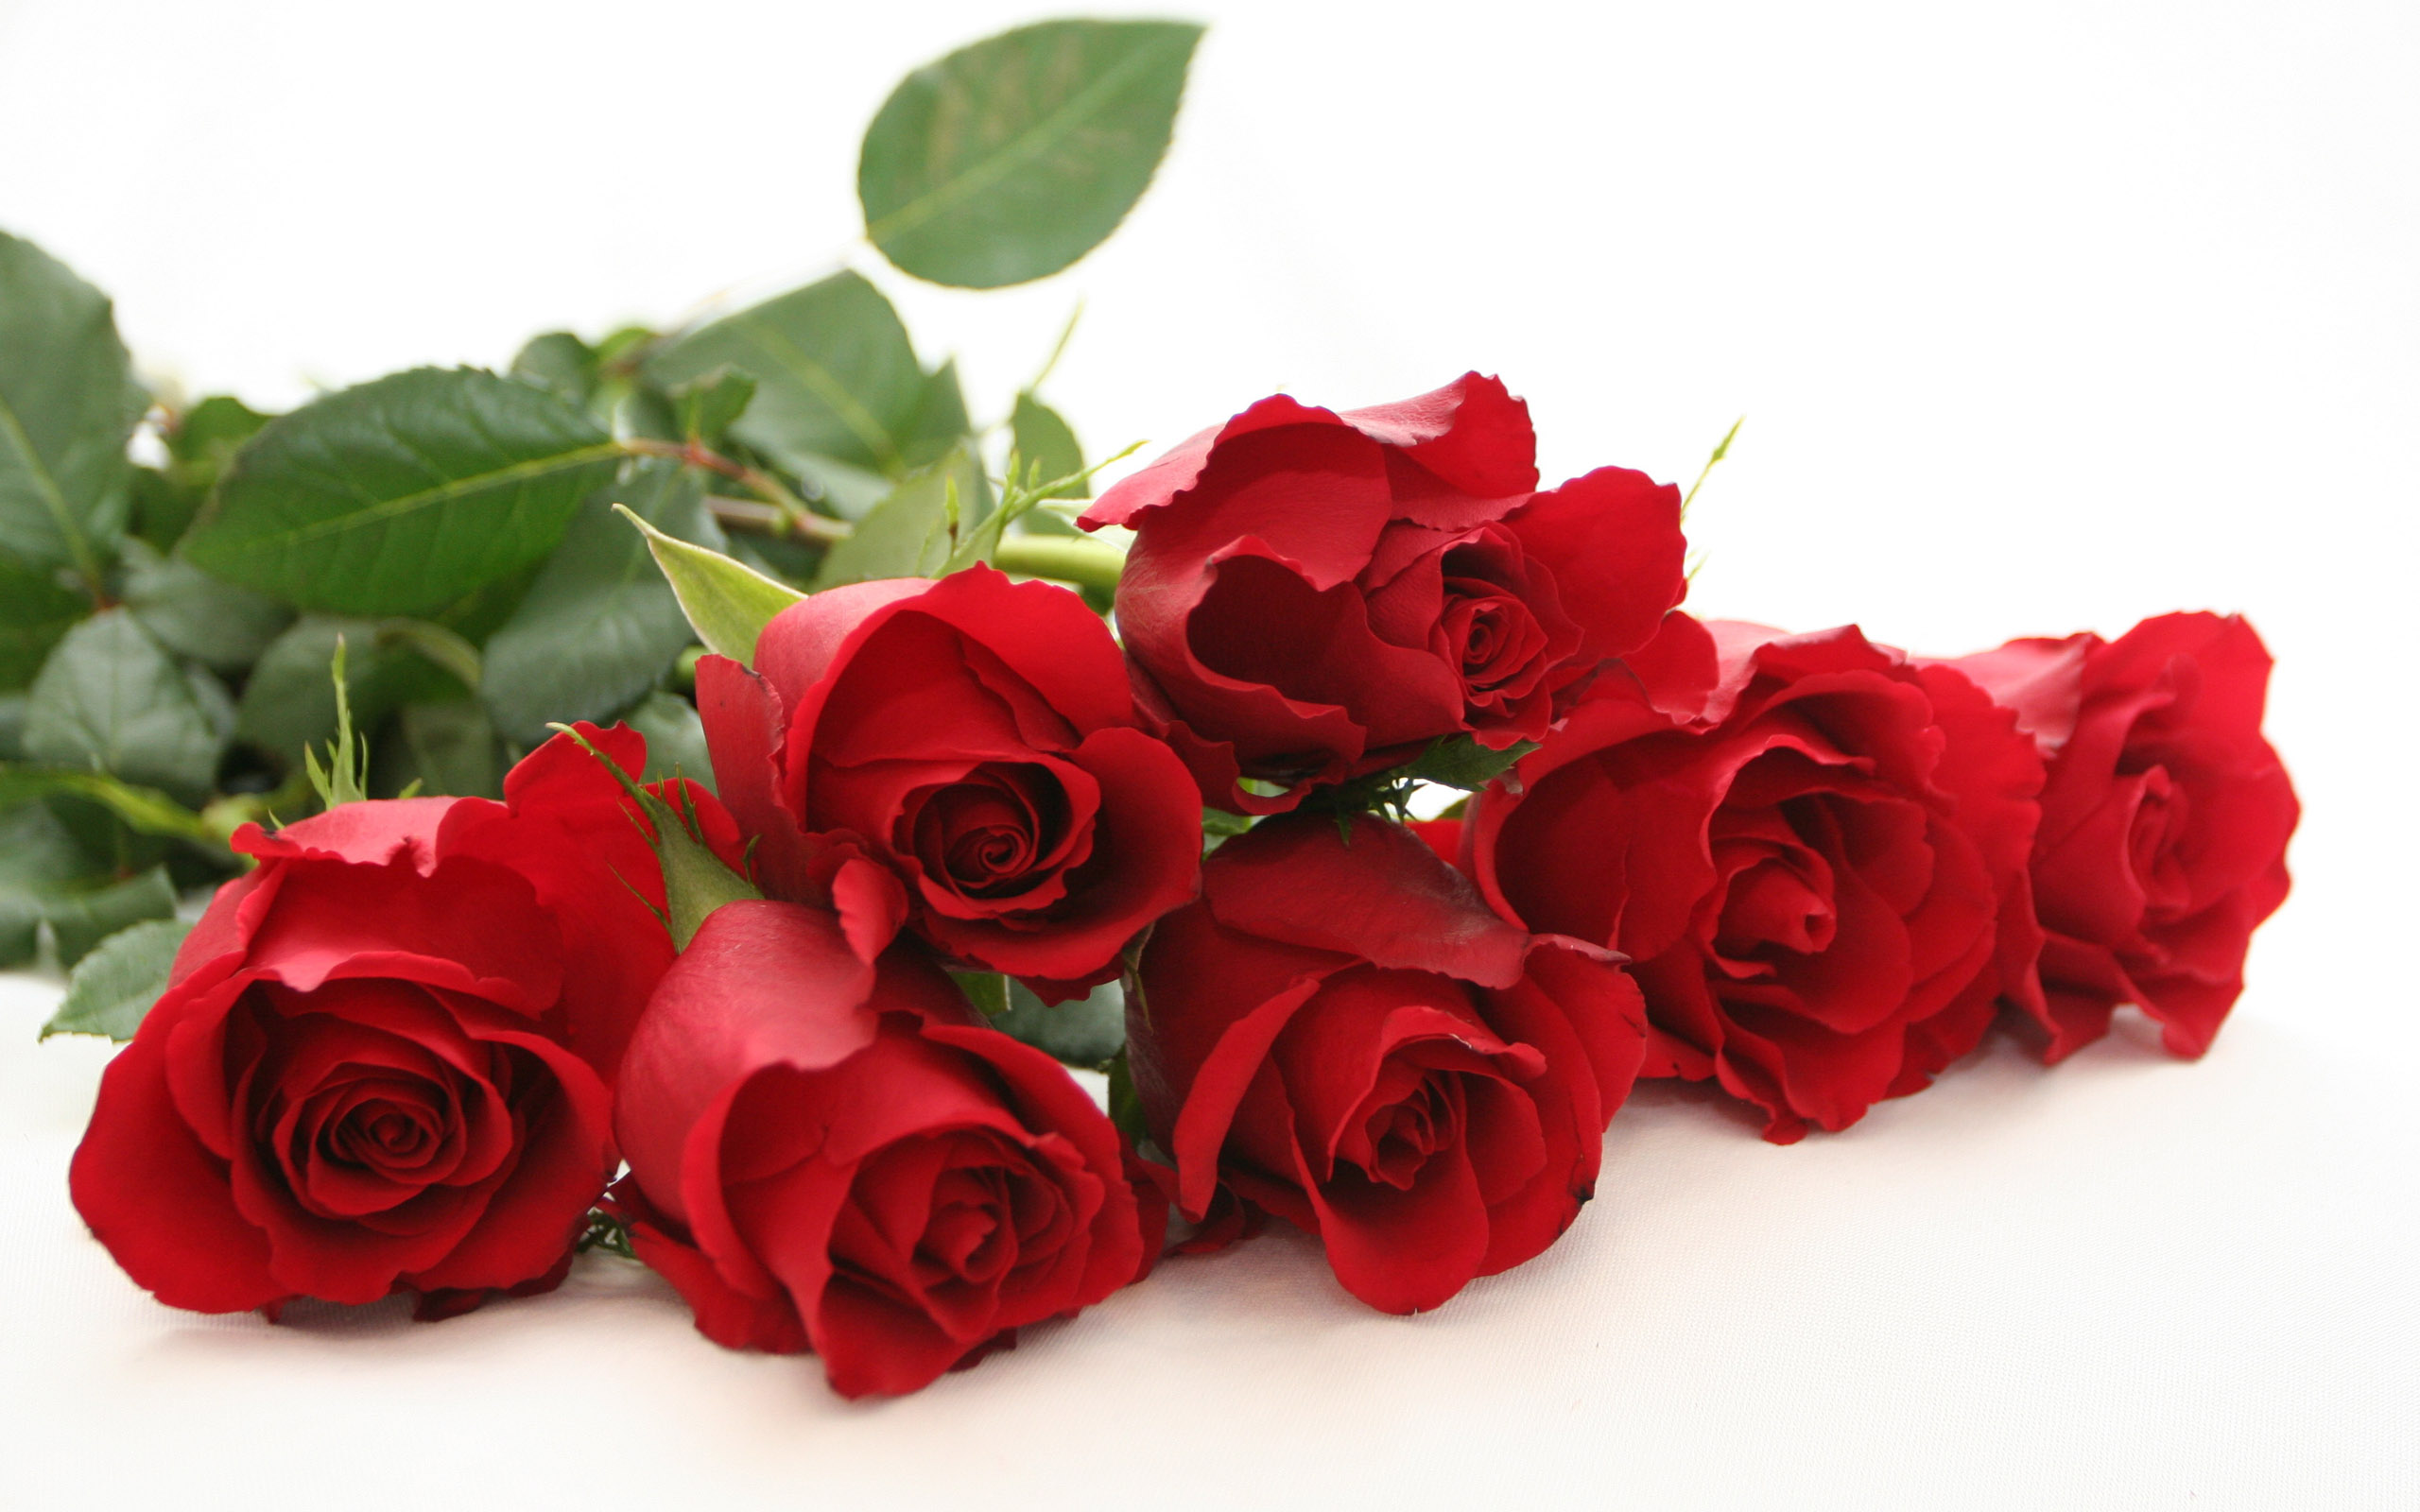 Hoa hồng đỏ là lời nhắn nhủ về tình cảm chân thành và mãnh liệt